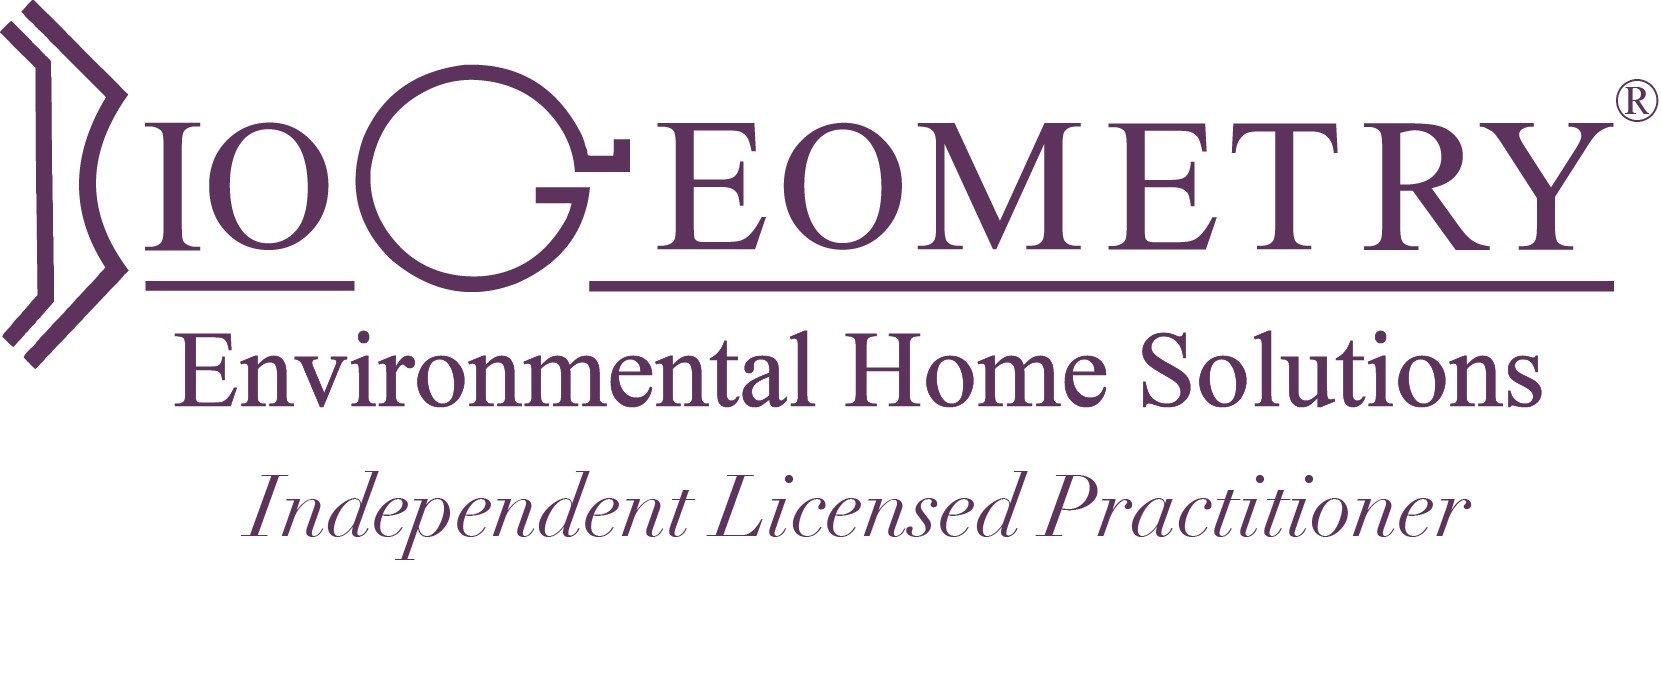 BioGeometry Environmental Home Solutions (BG-EHS)